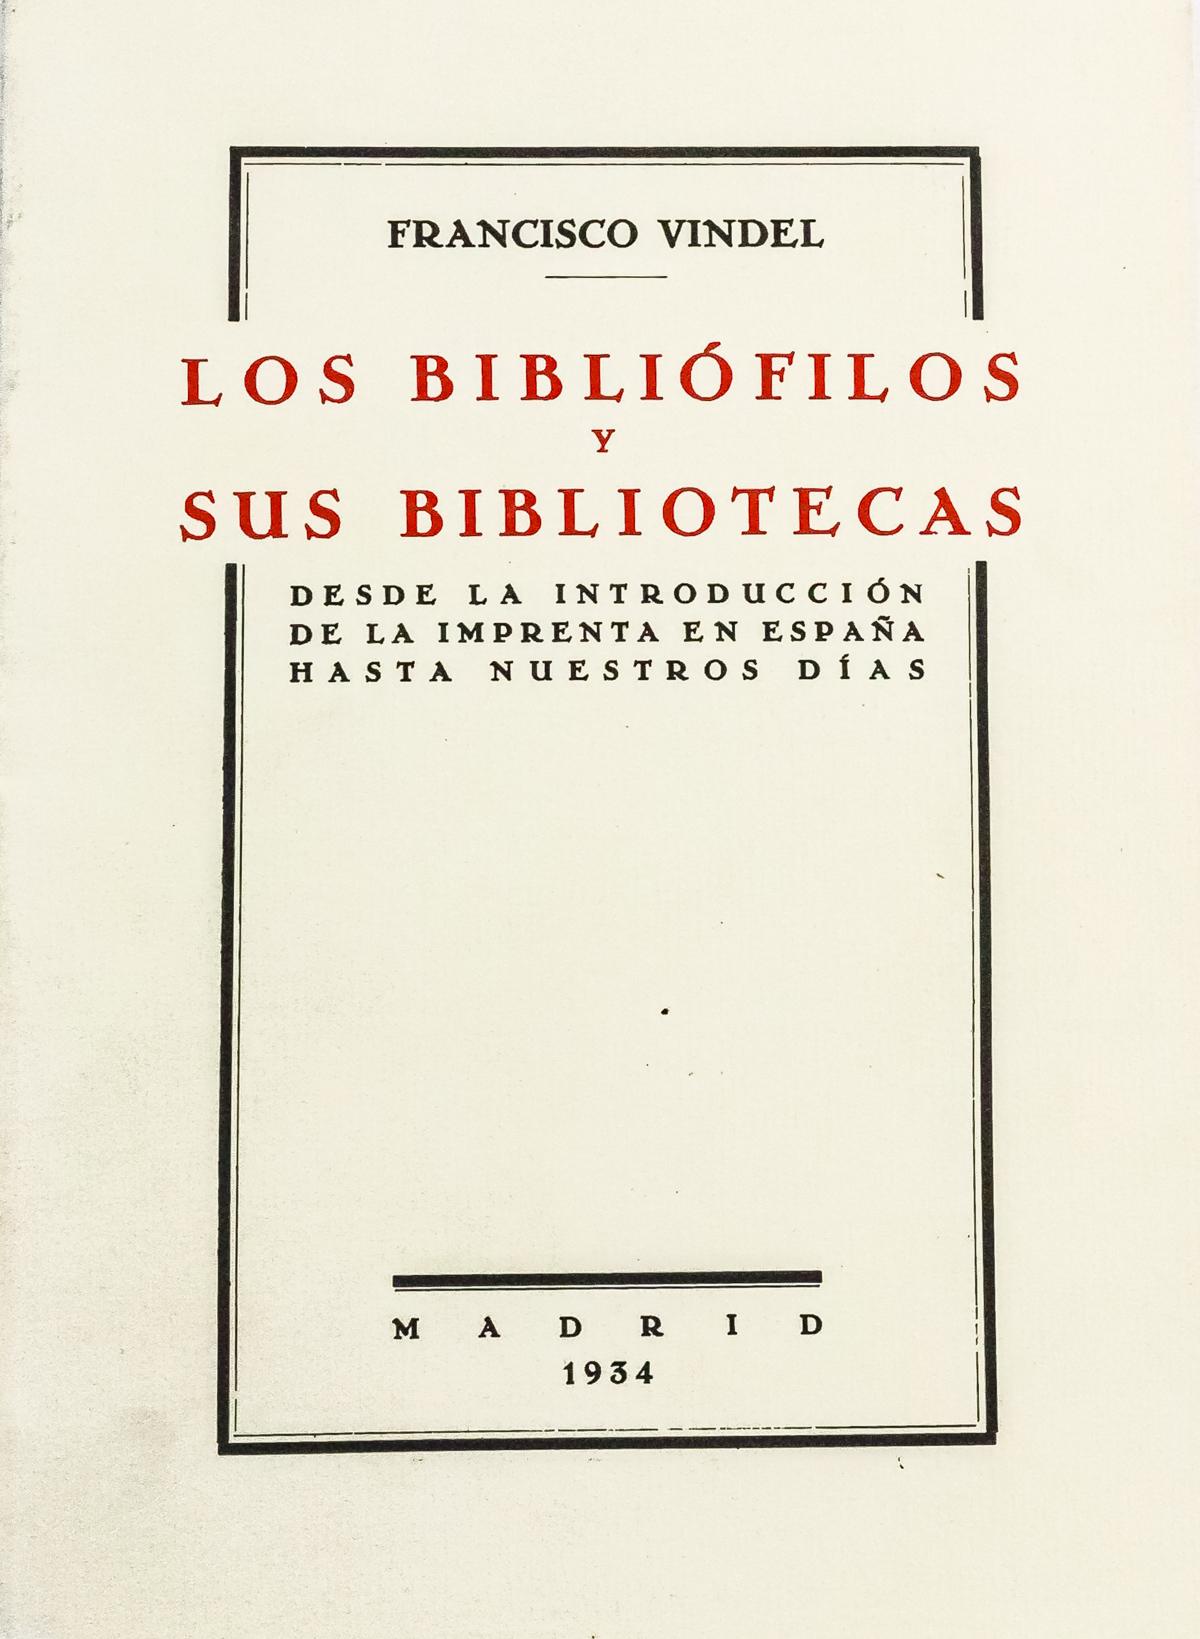 "LOS BIBLIÓFILOS Y SUS BIBLIOTECAS"